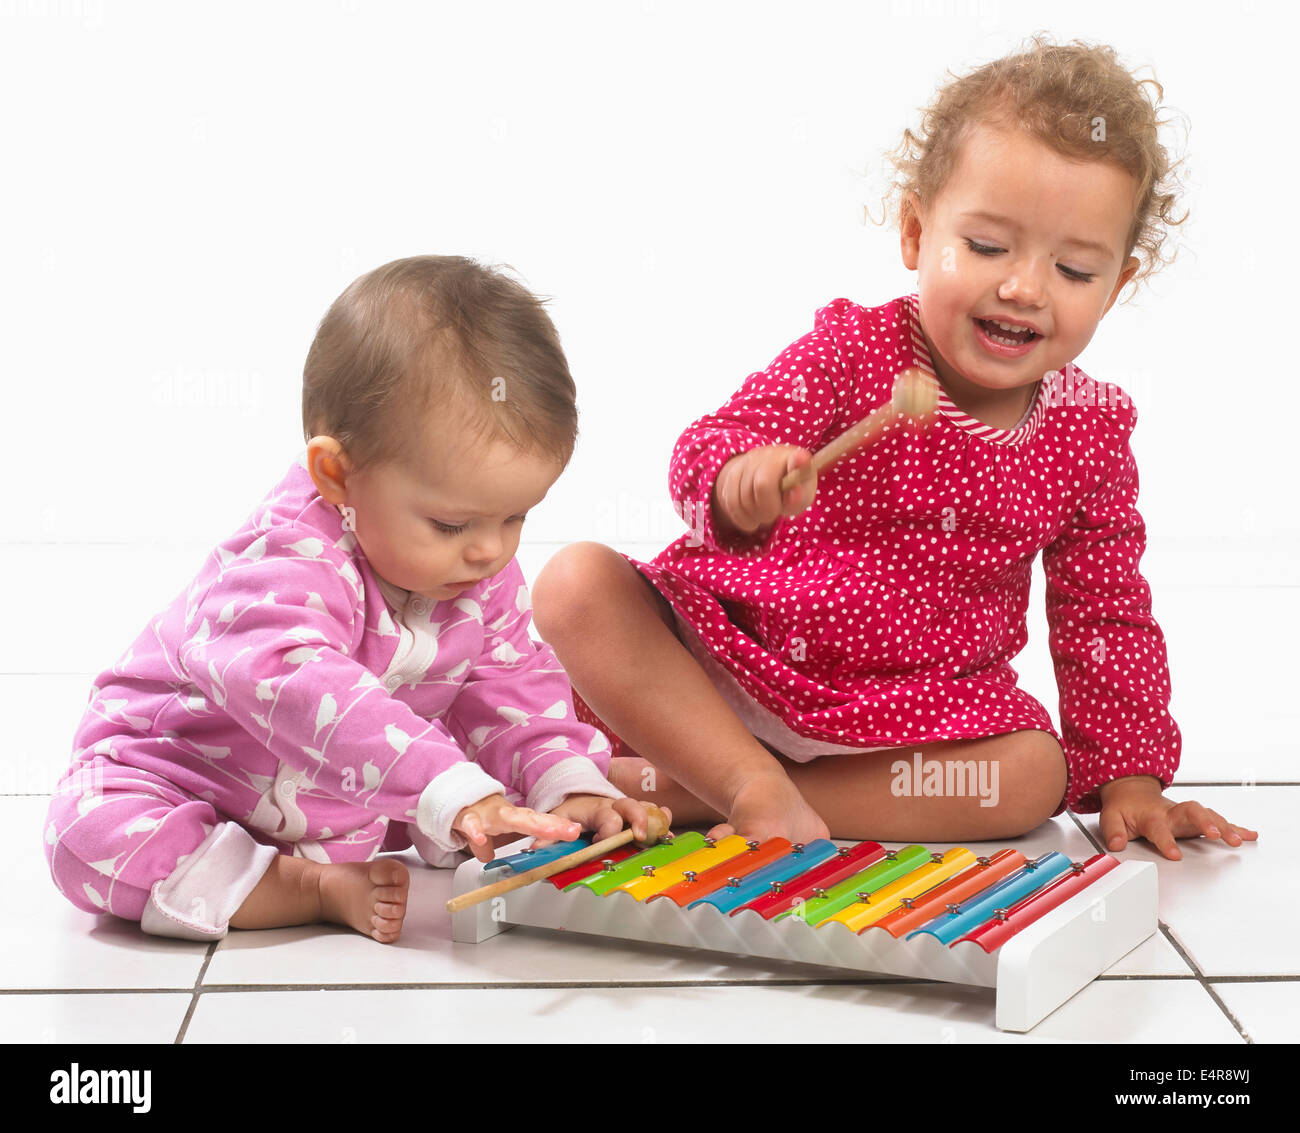 Bébé fille (8 mois) et de la jeune fille (2 ans) à jouer avec le xylophone jouet coloré Banque D'Images